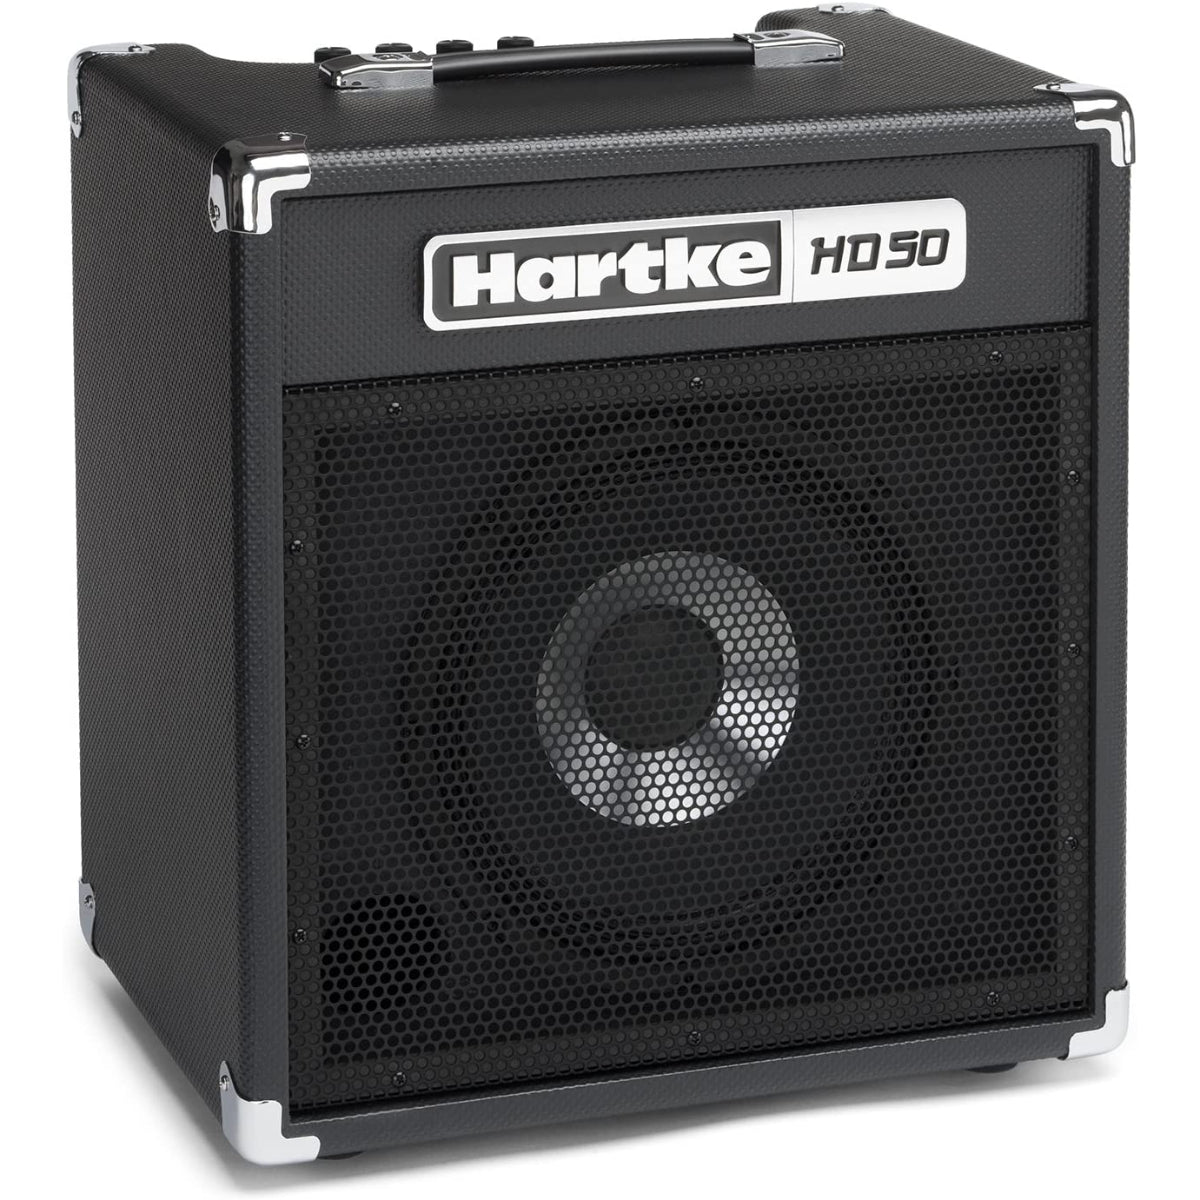 Hartke HD50 50W 1x10in Bass Combo Amplifier